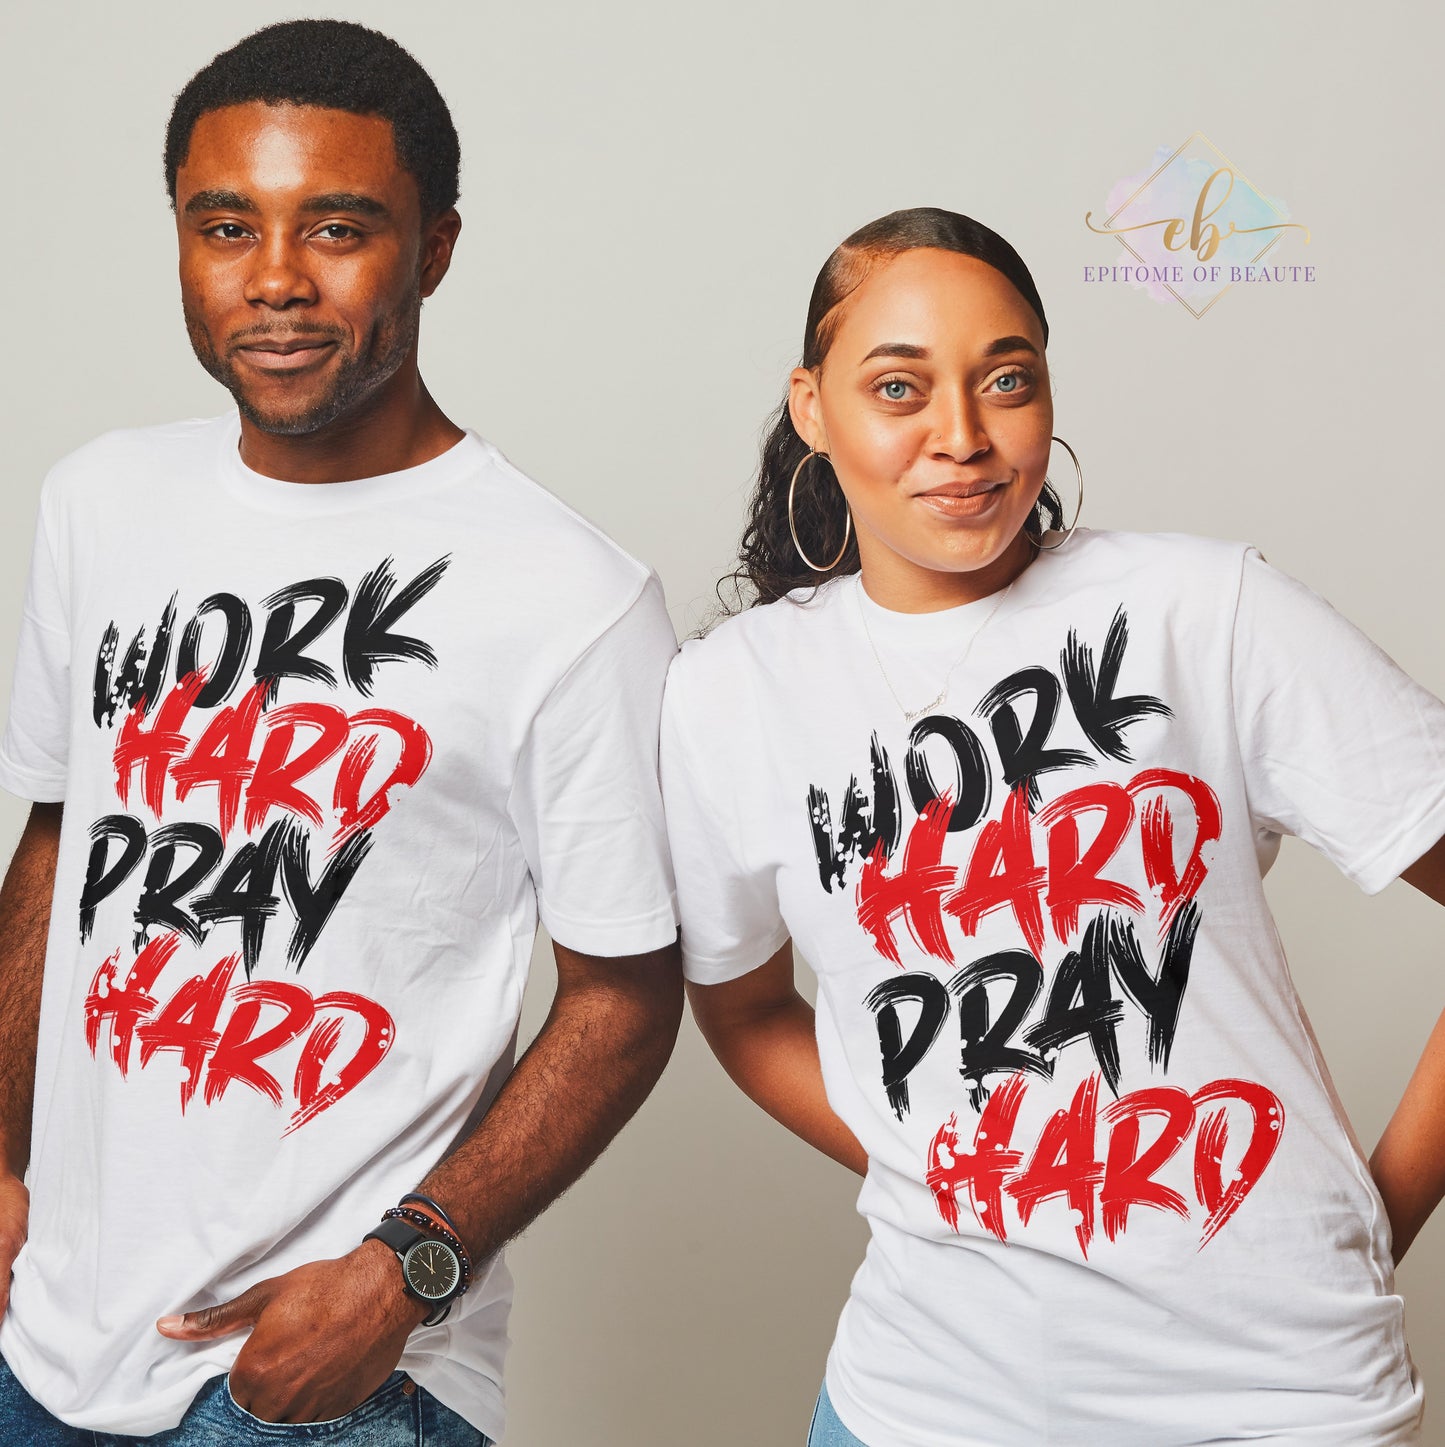 Work Hard Pray Hard T-shirt